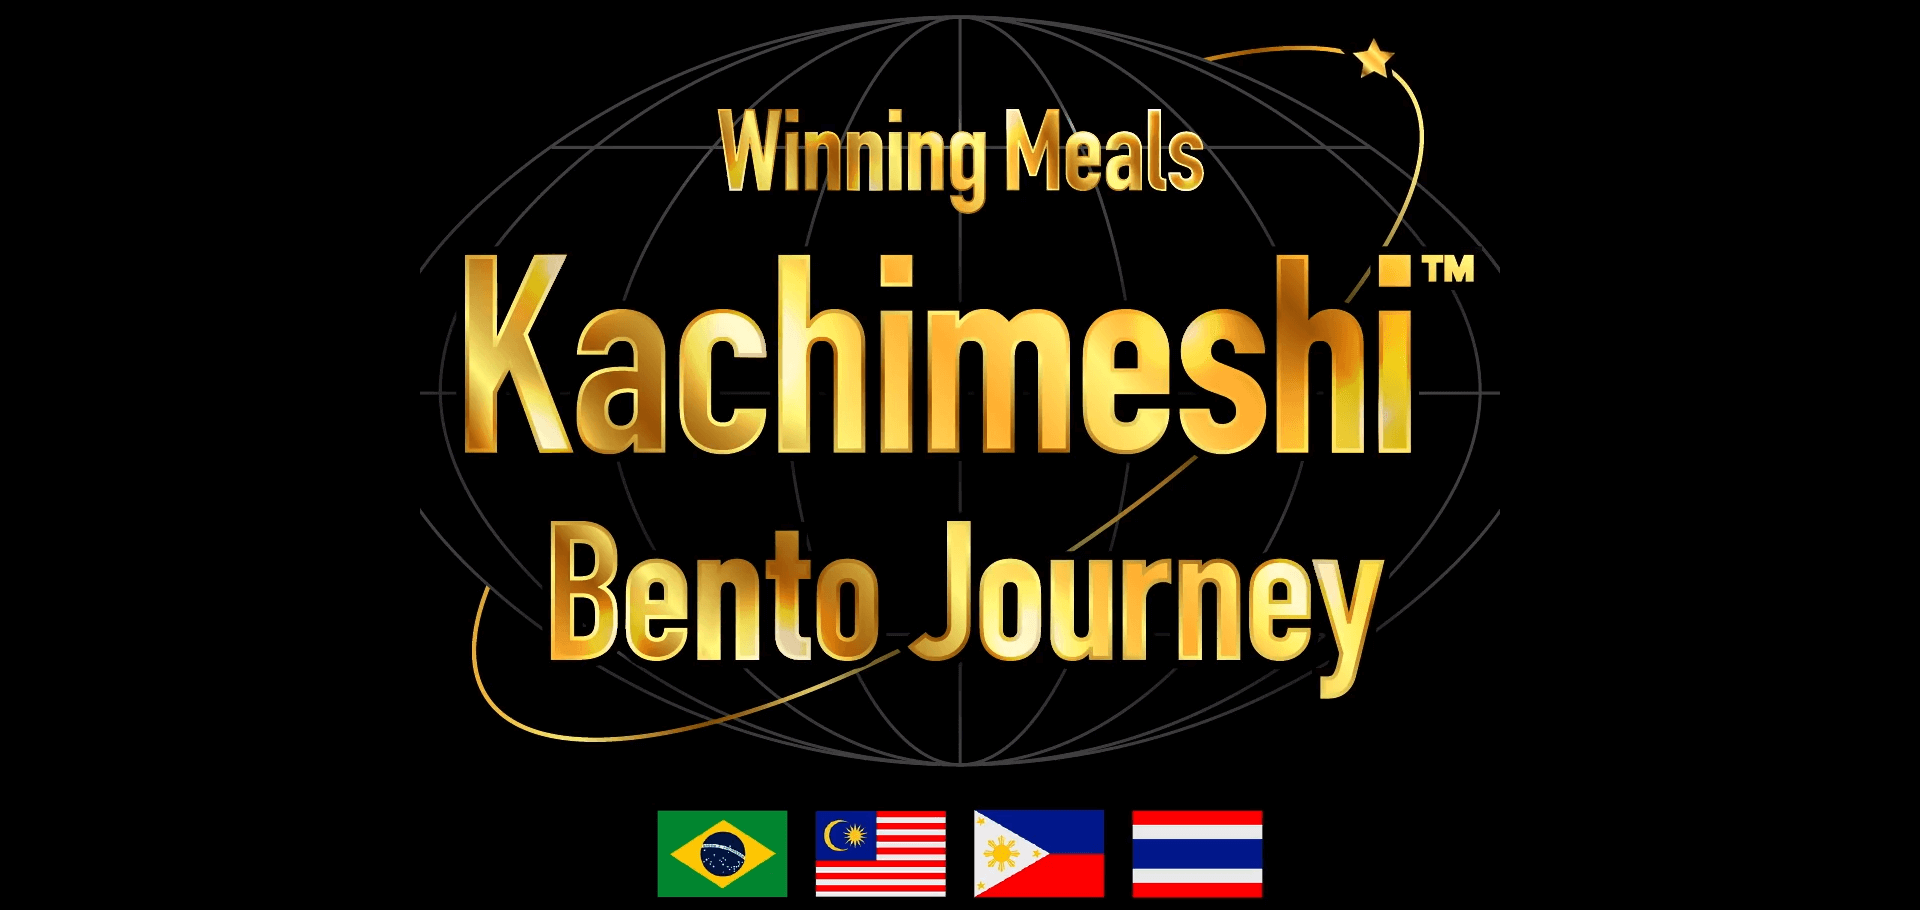 الوجبات الفائزة رحلة كاتشيميشي بينتو